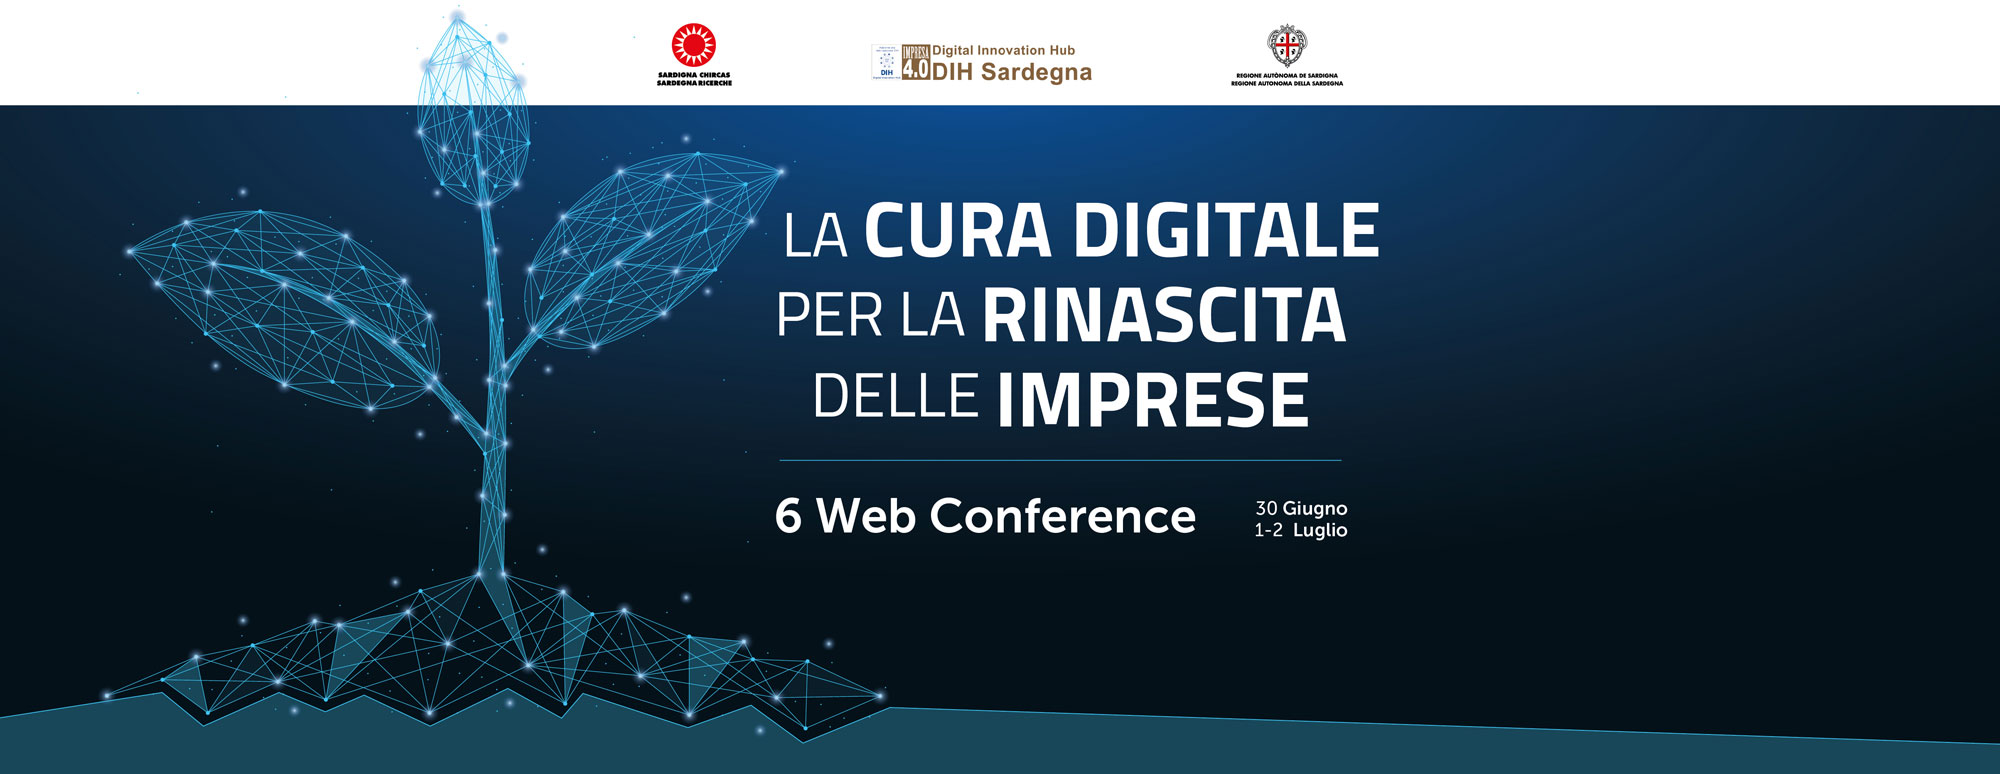 La cura digitale per la rinascita delle imprese - Web Conferences